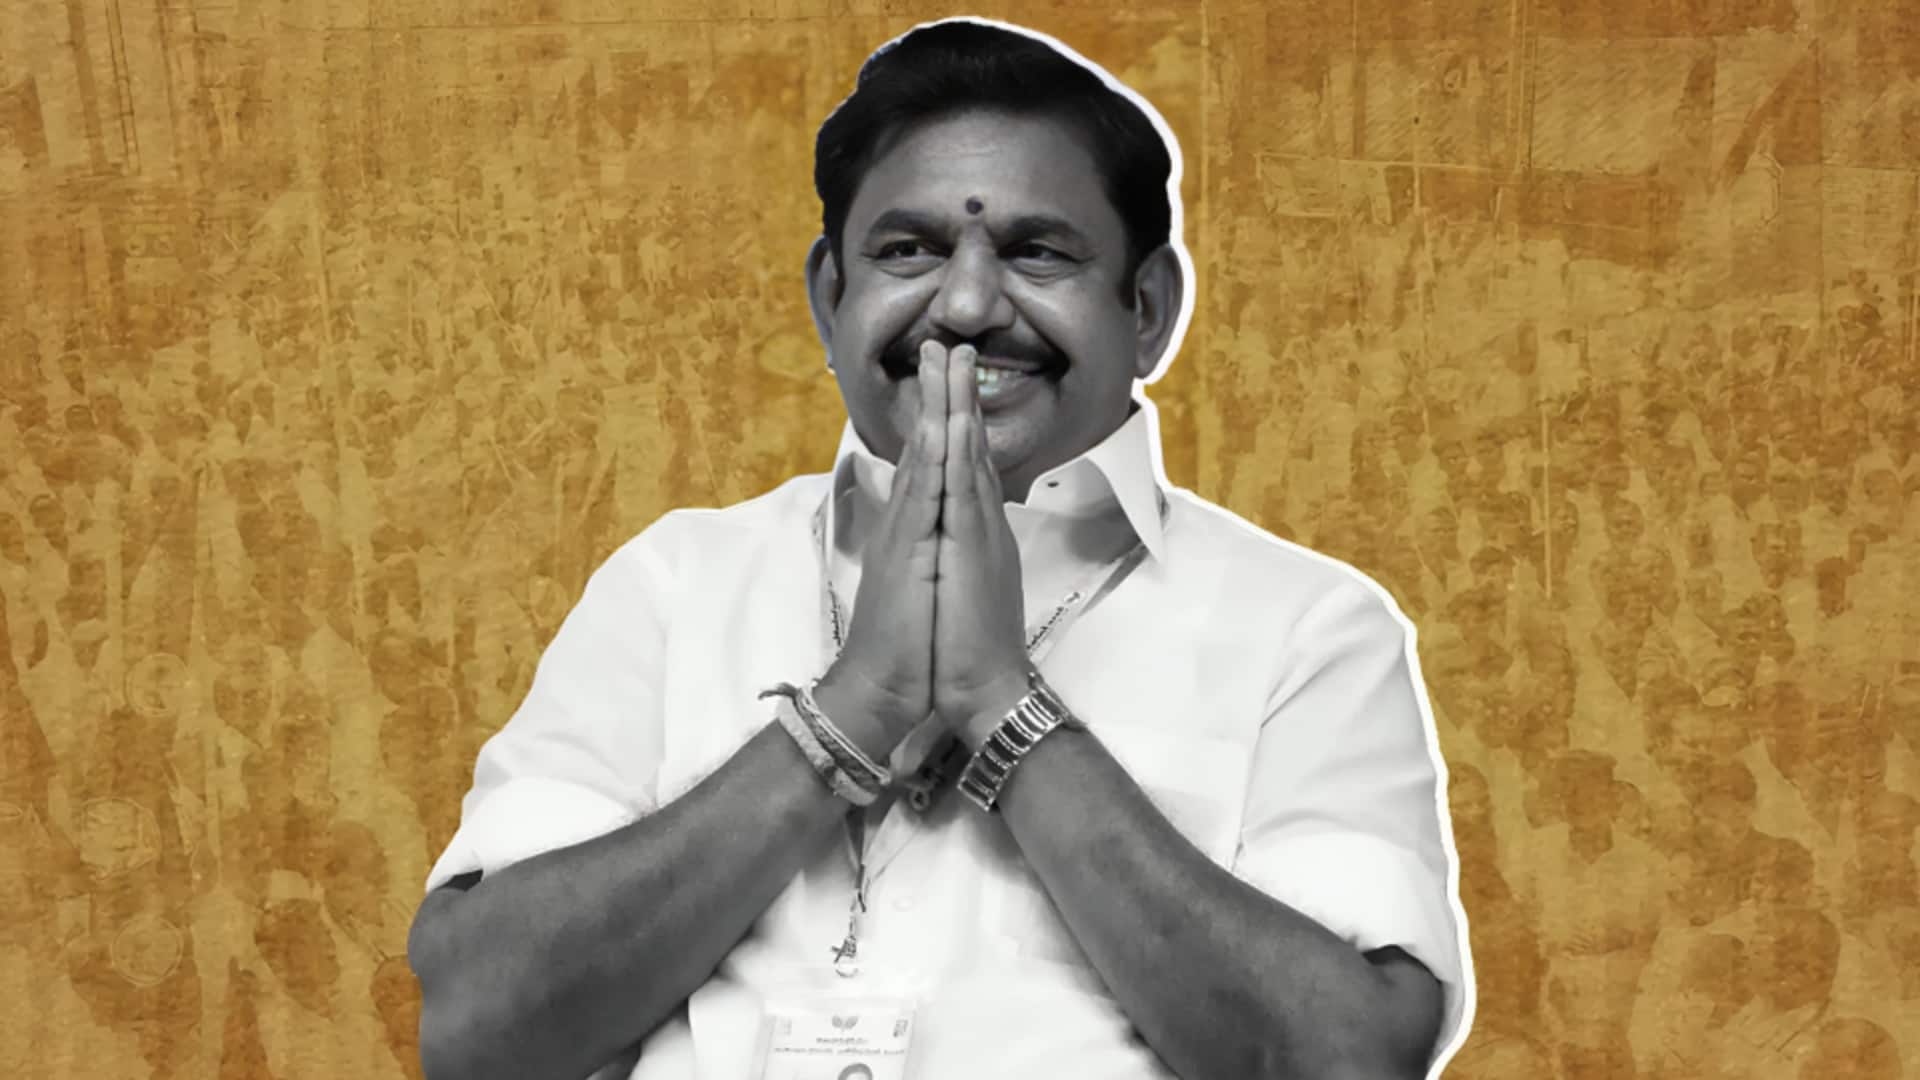 चुनाव आयोग के दस्ते ने तमिलनाडु के पूर्व मुख्यमंत्री पलानीस्वामी के काफिले को रोका, जांच की